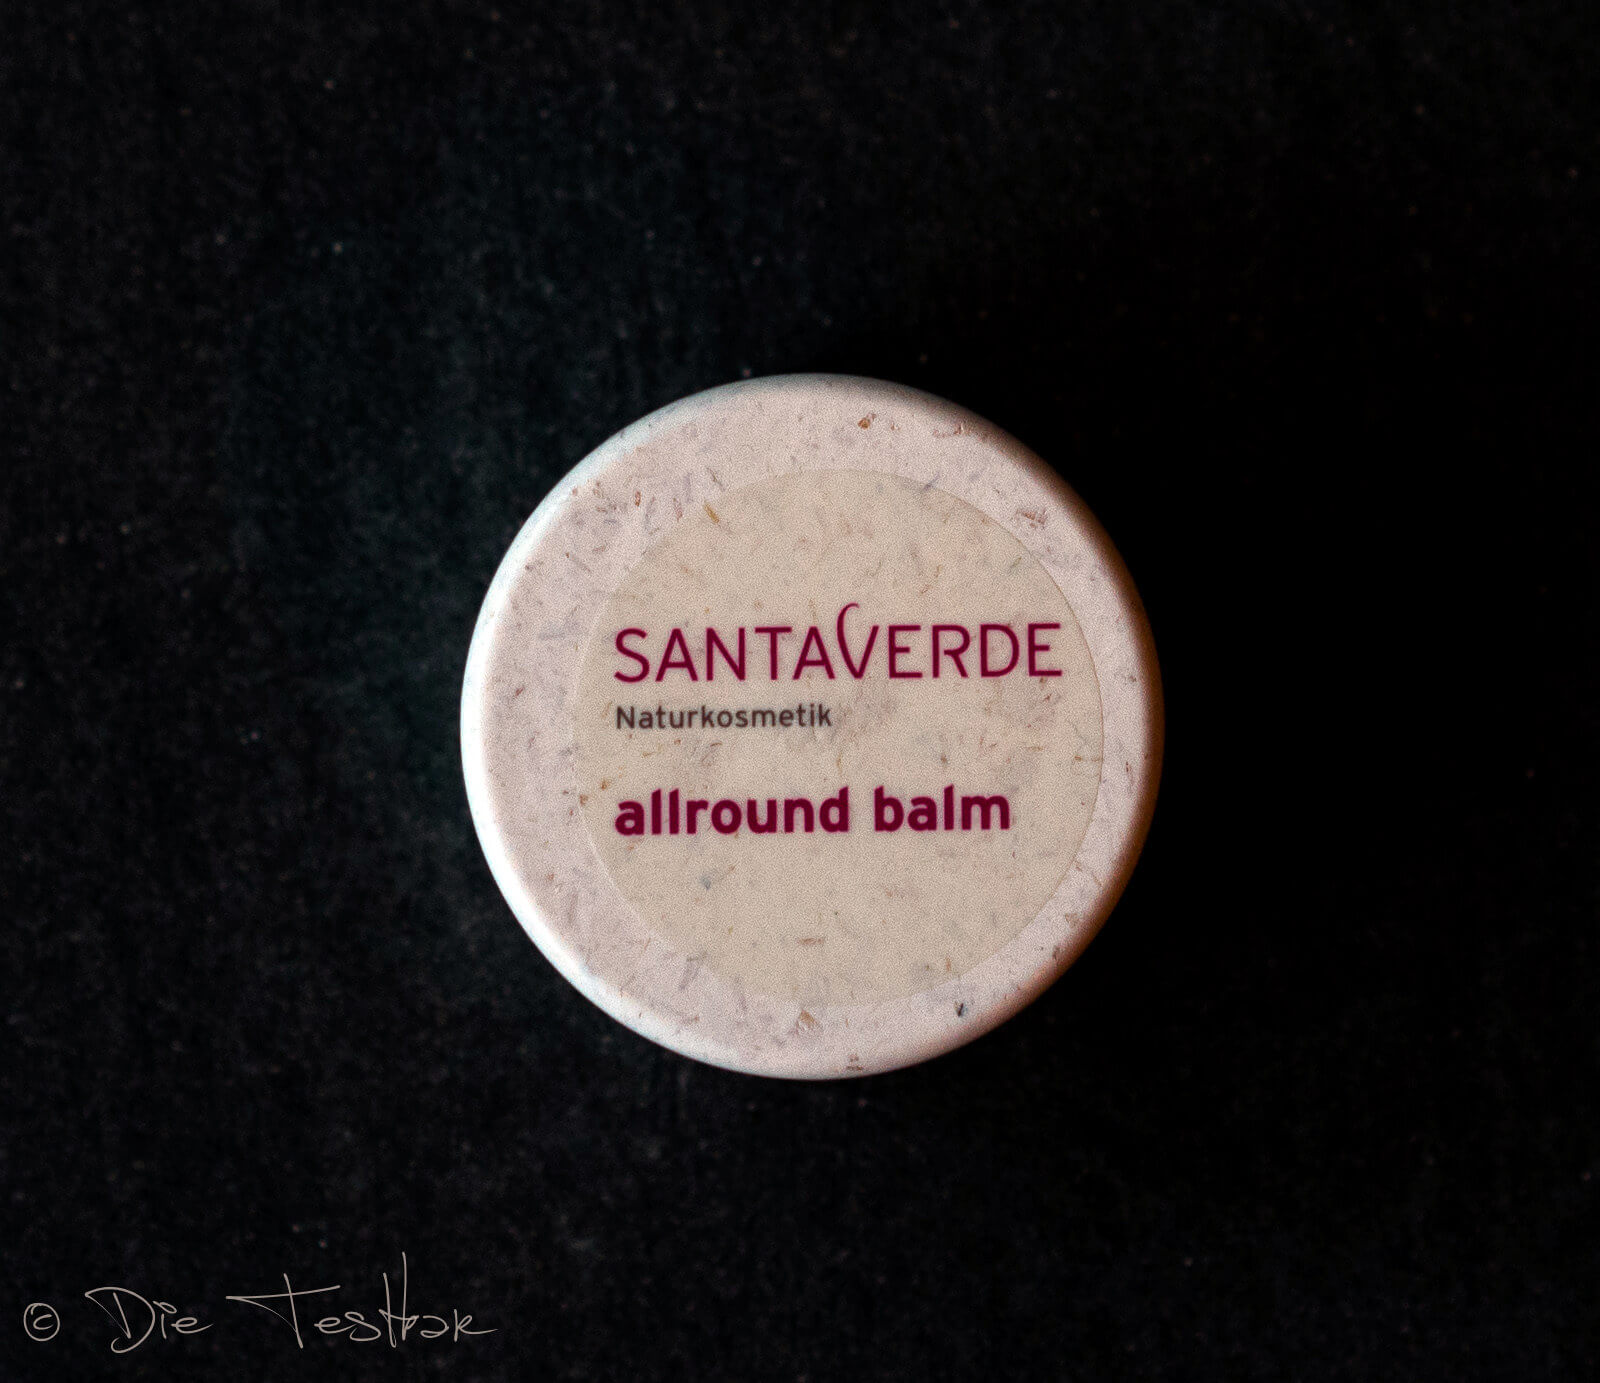 Die SOS-Pflege für die Lippen und trockene Hautpartien - allround balm von Santaverde 3